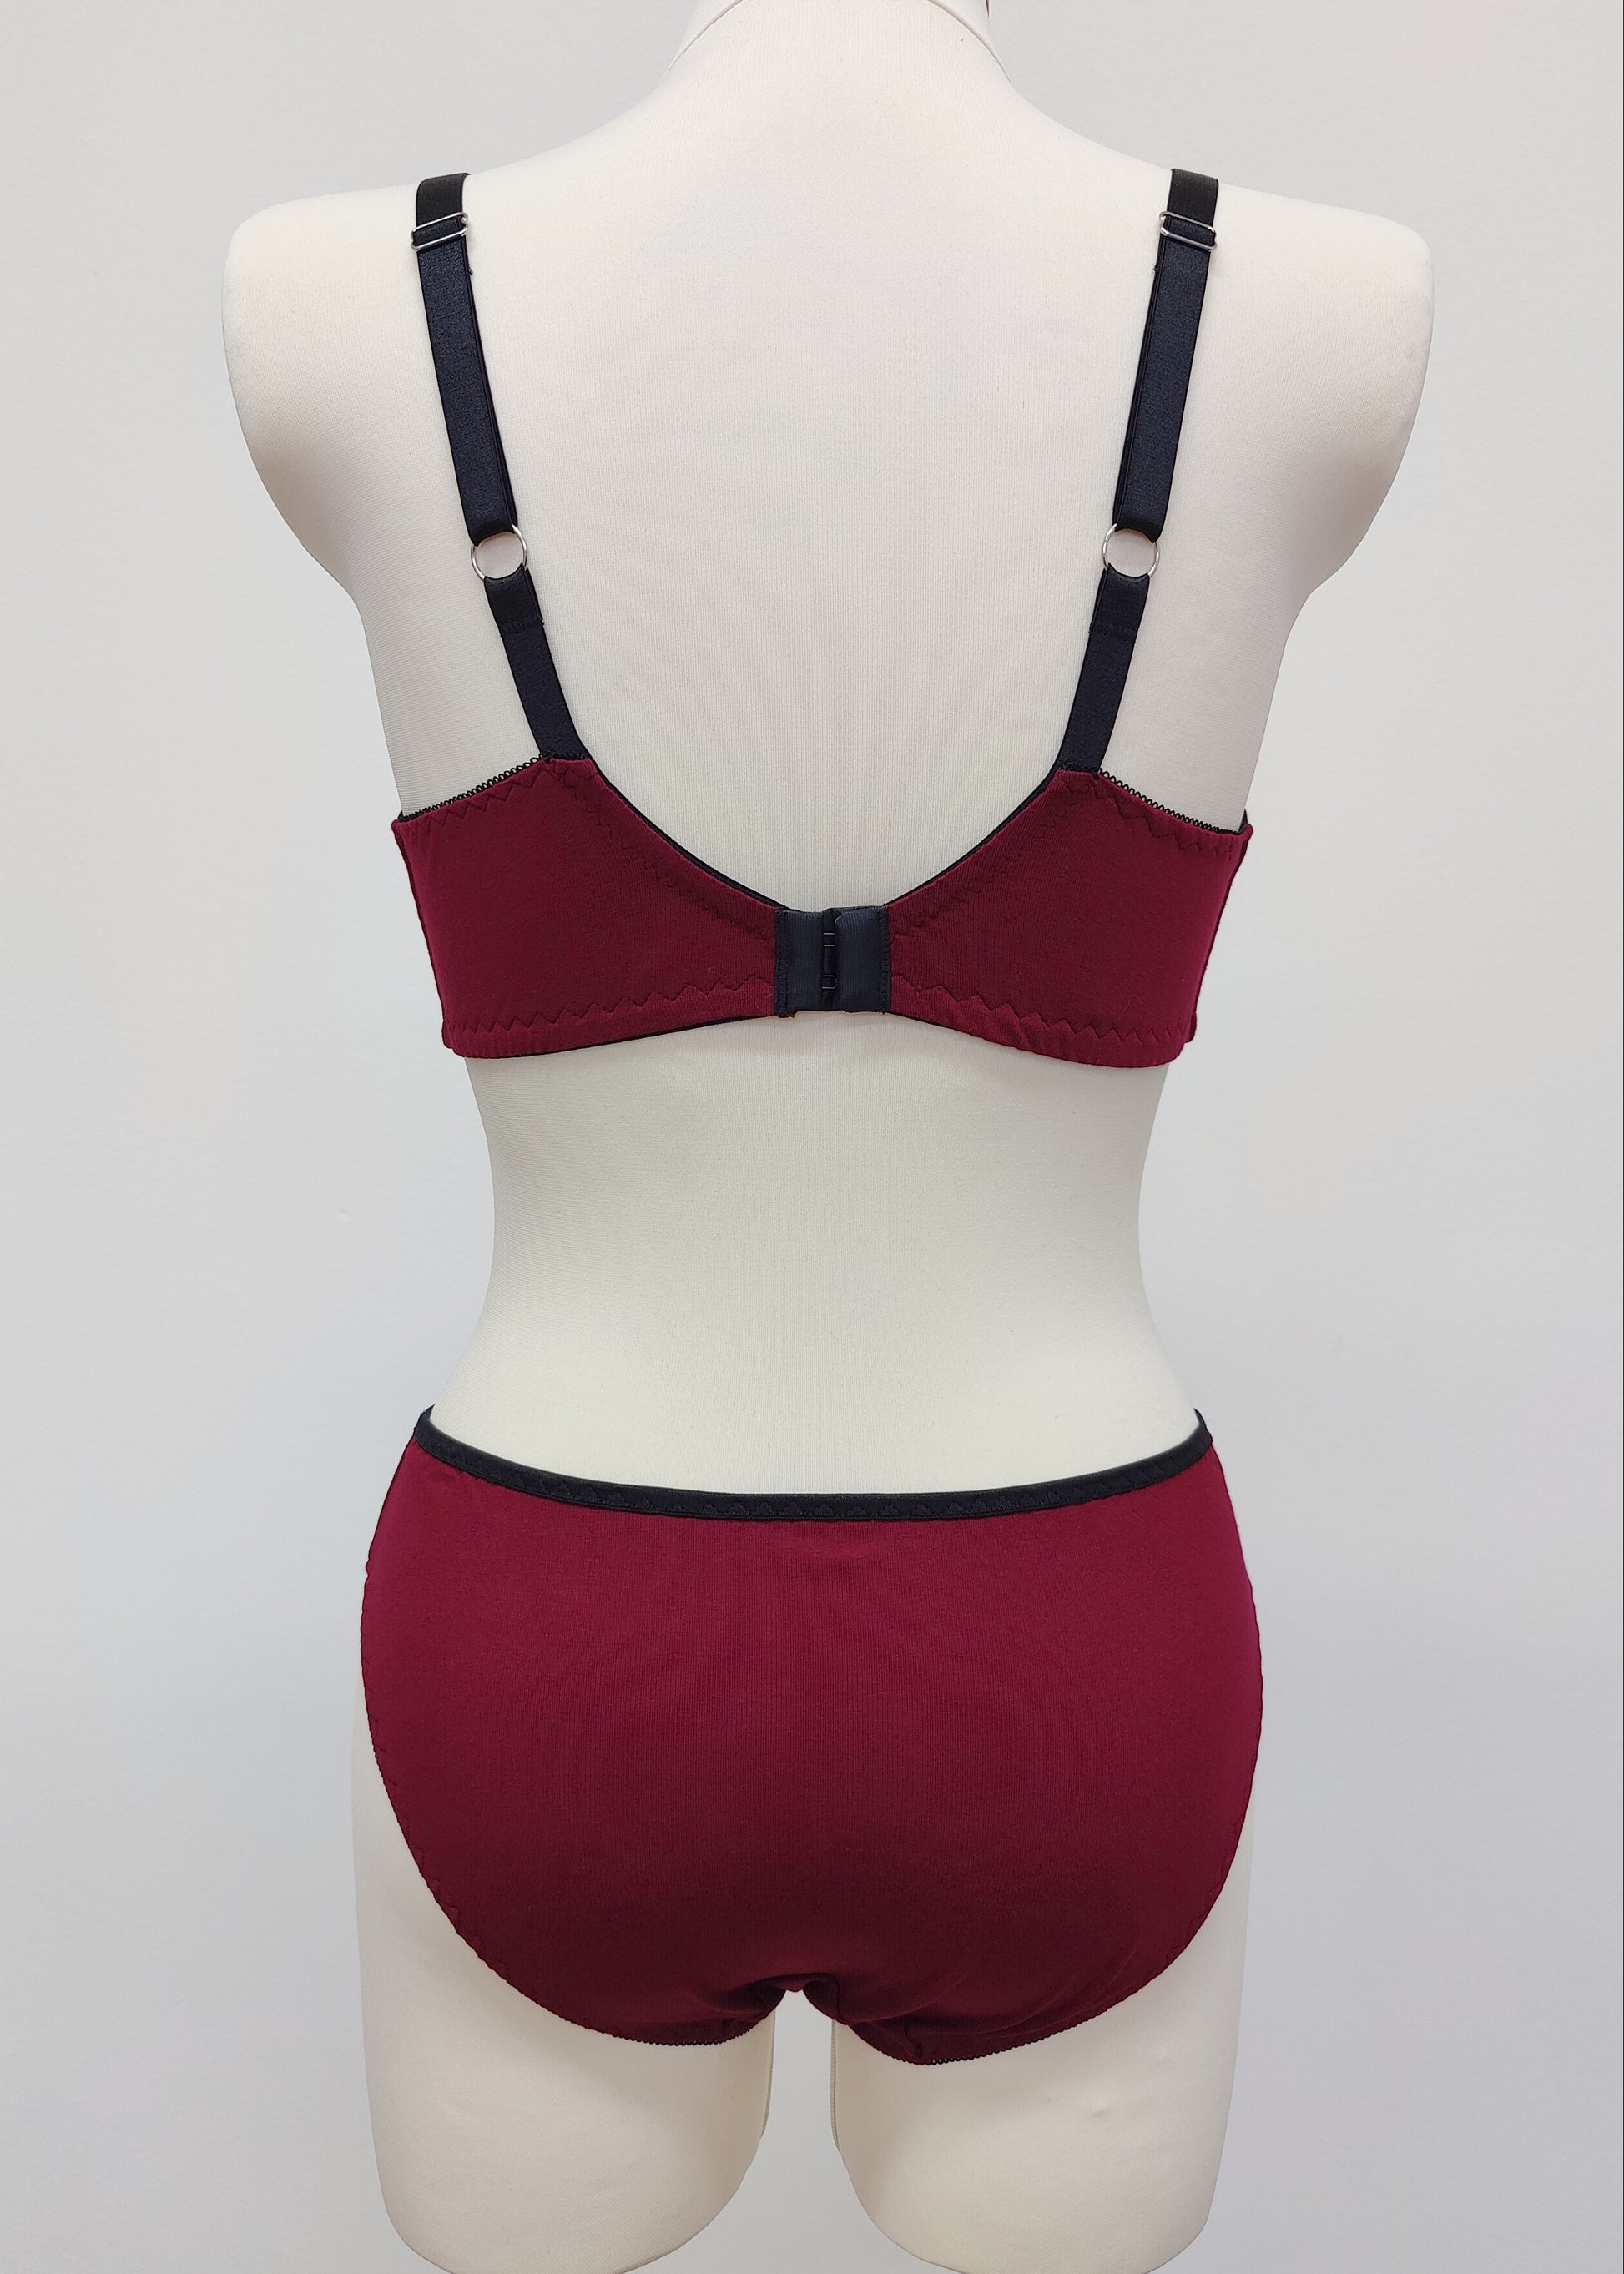 Organic Cotton Classic Bikini Undies - Burgundy Red